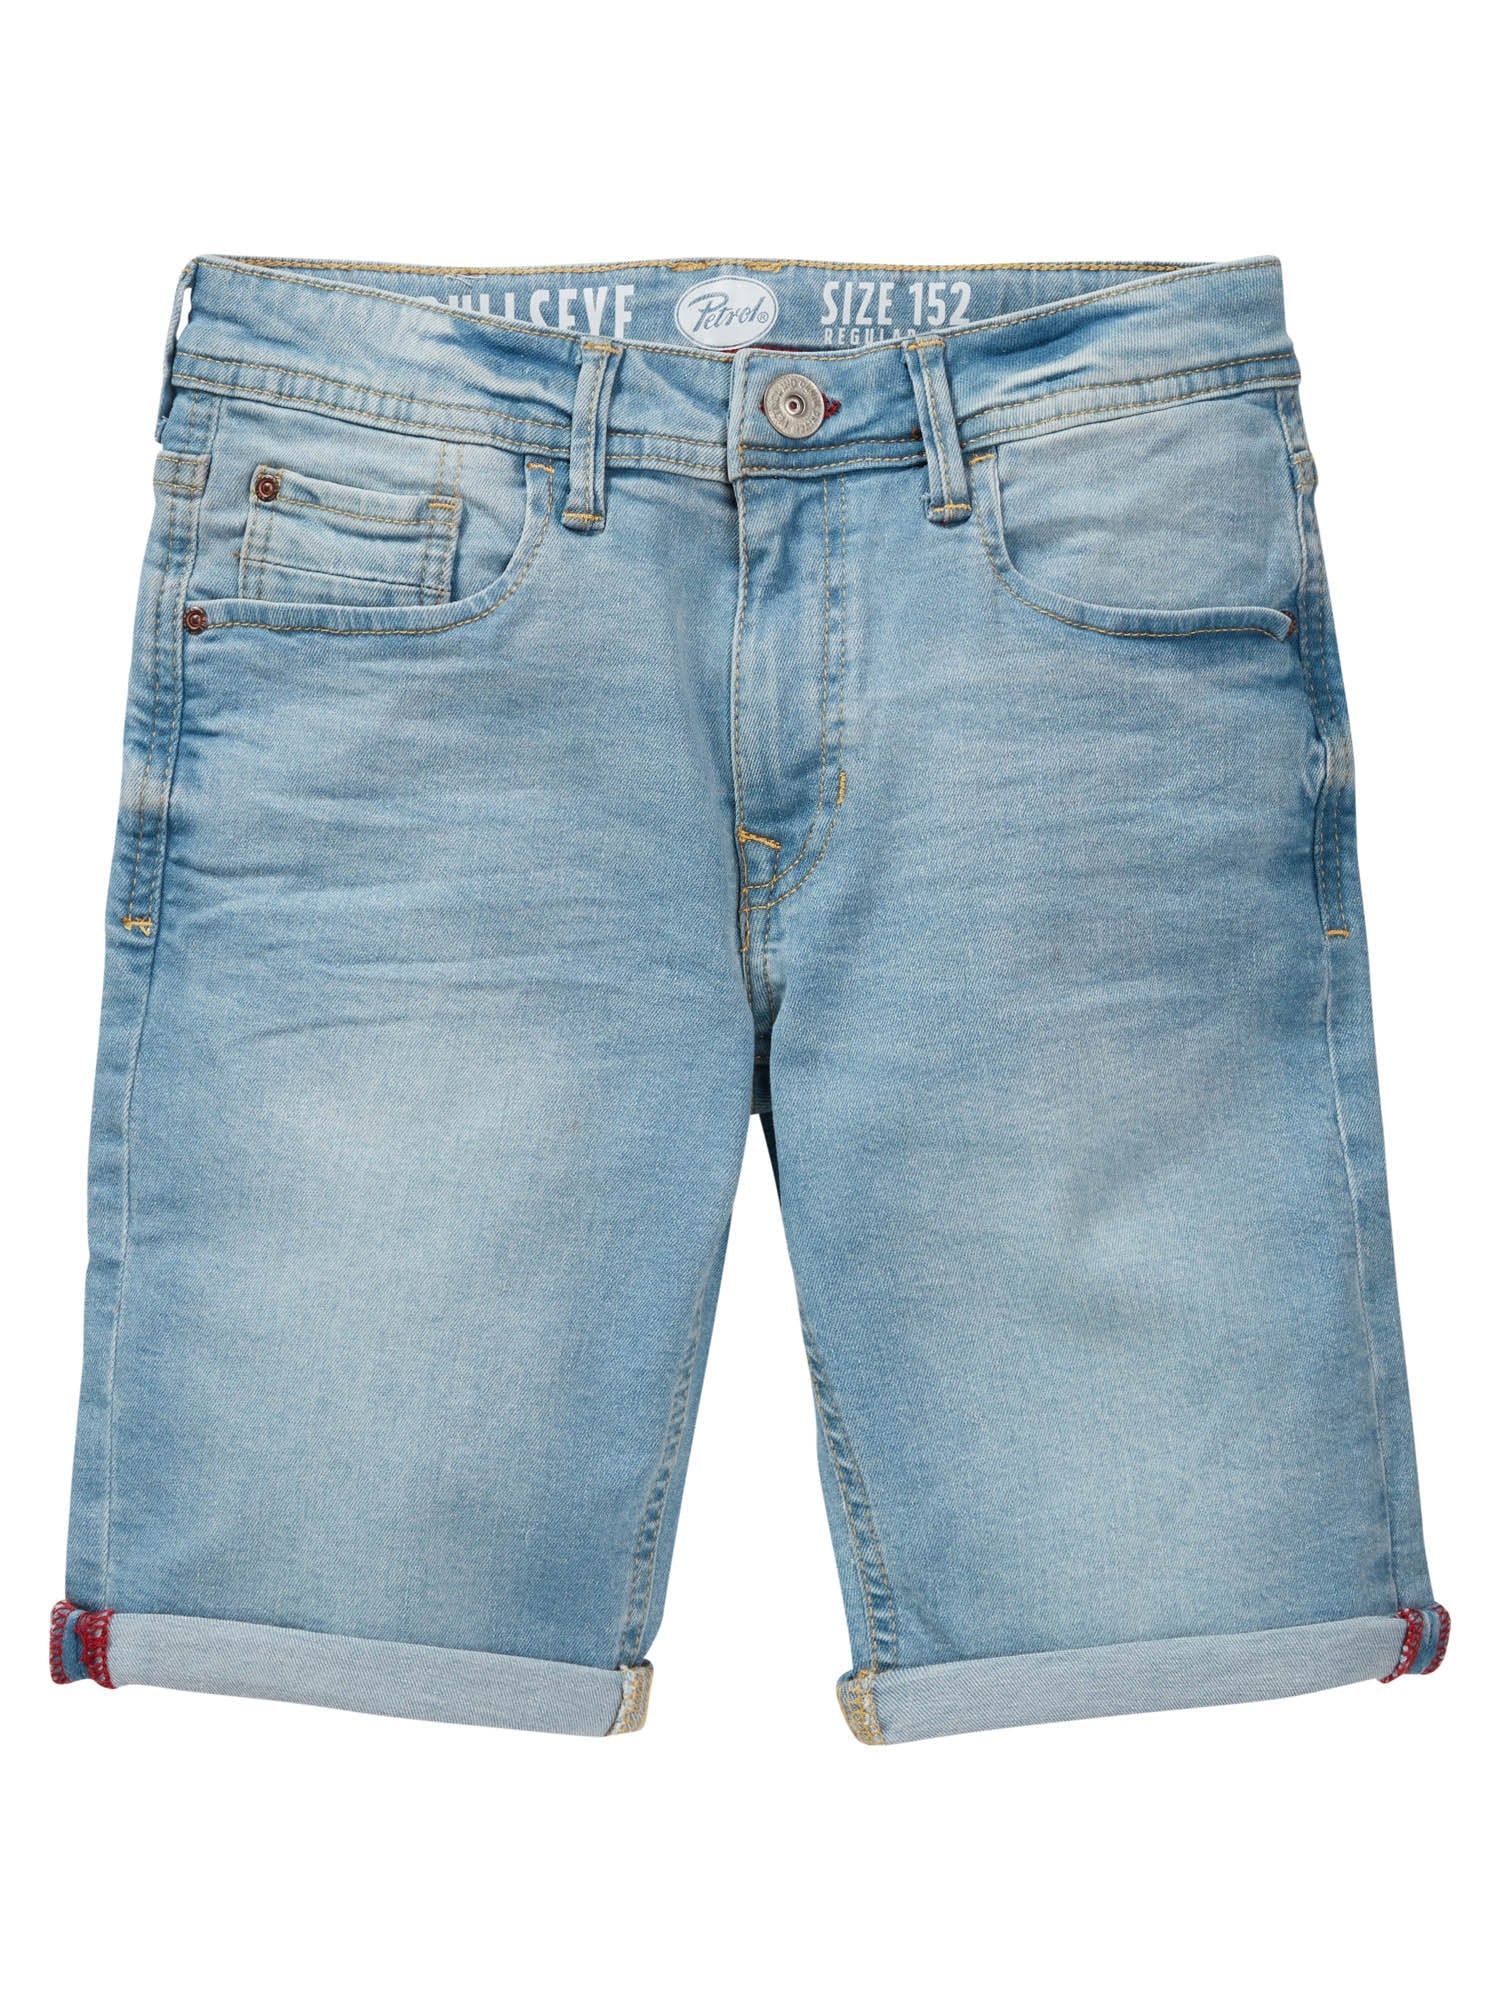 Jongens Jeans short five-pocket van Petrol in de kleur Bleached in maat 176.